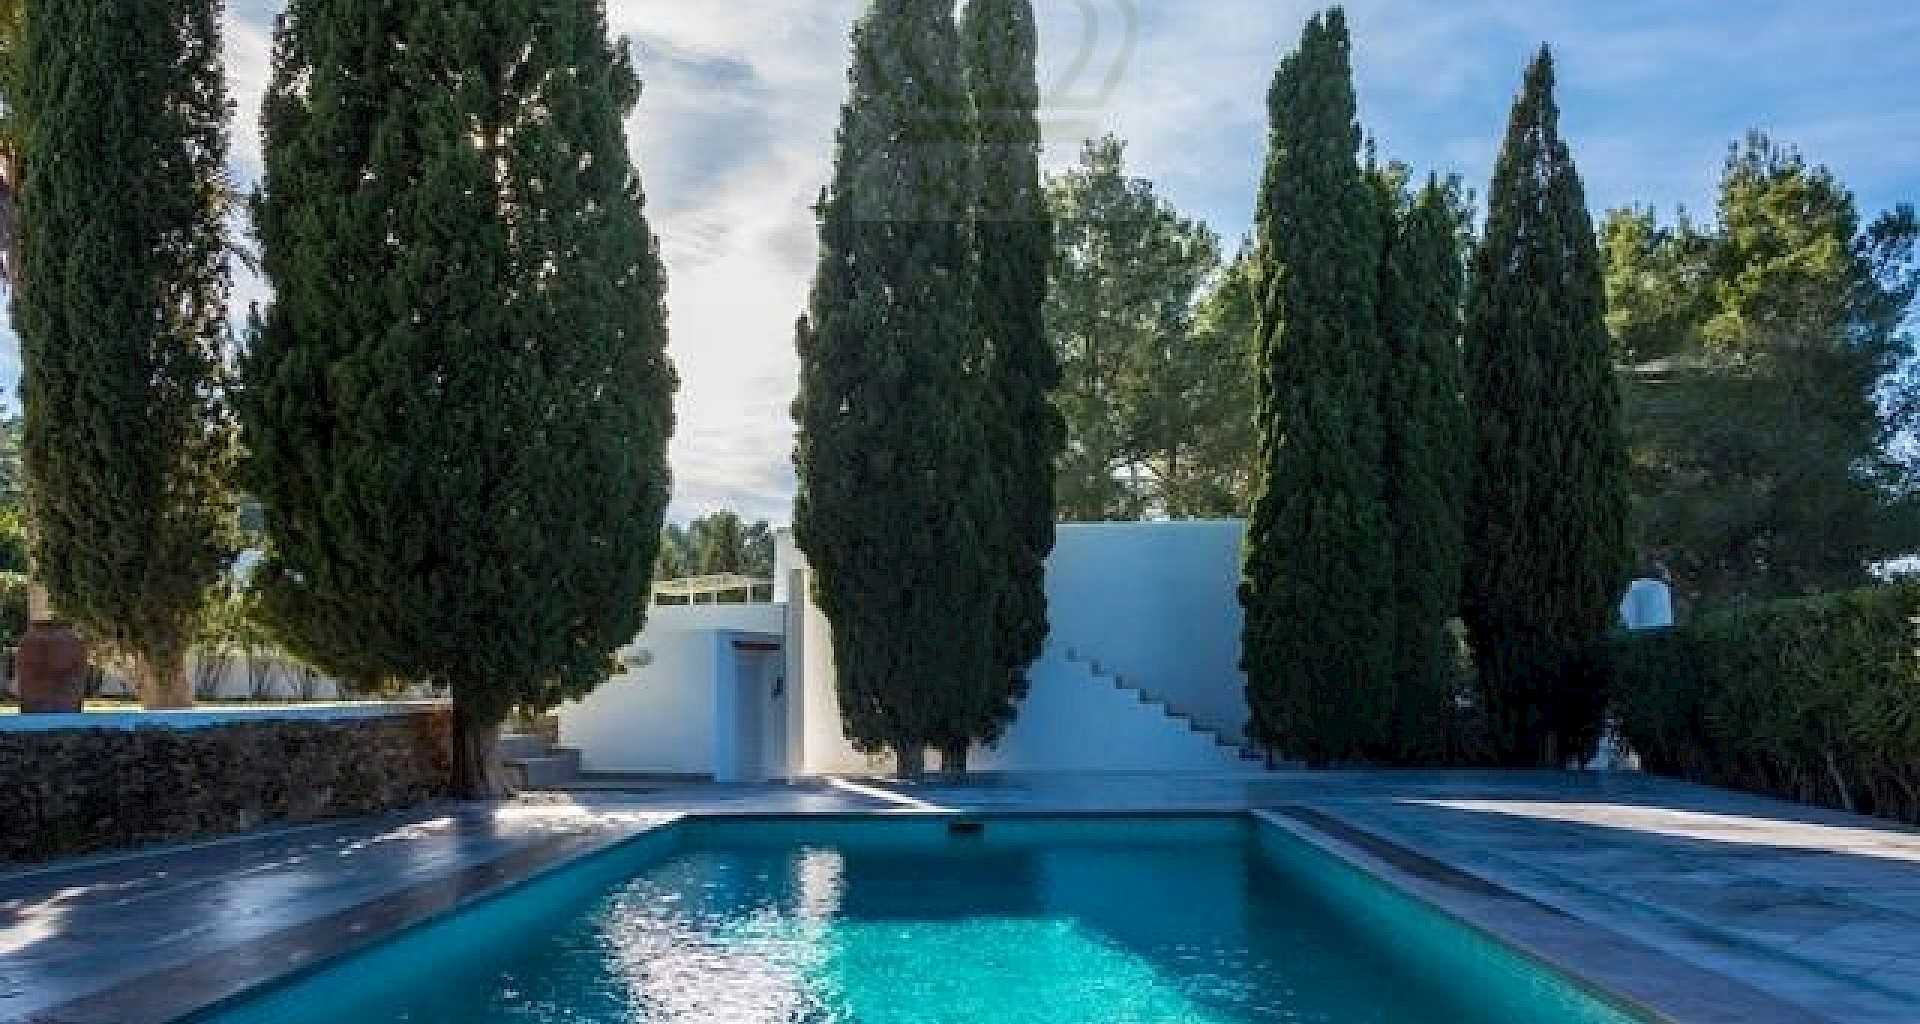 KROHN & LUEDEMANN Casa completamente renovada en Ibiza con piscina y mucha privacidad Benimussa (14)